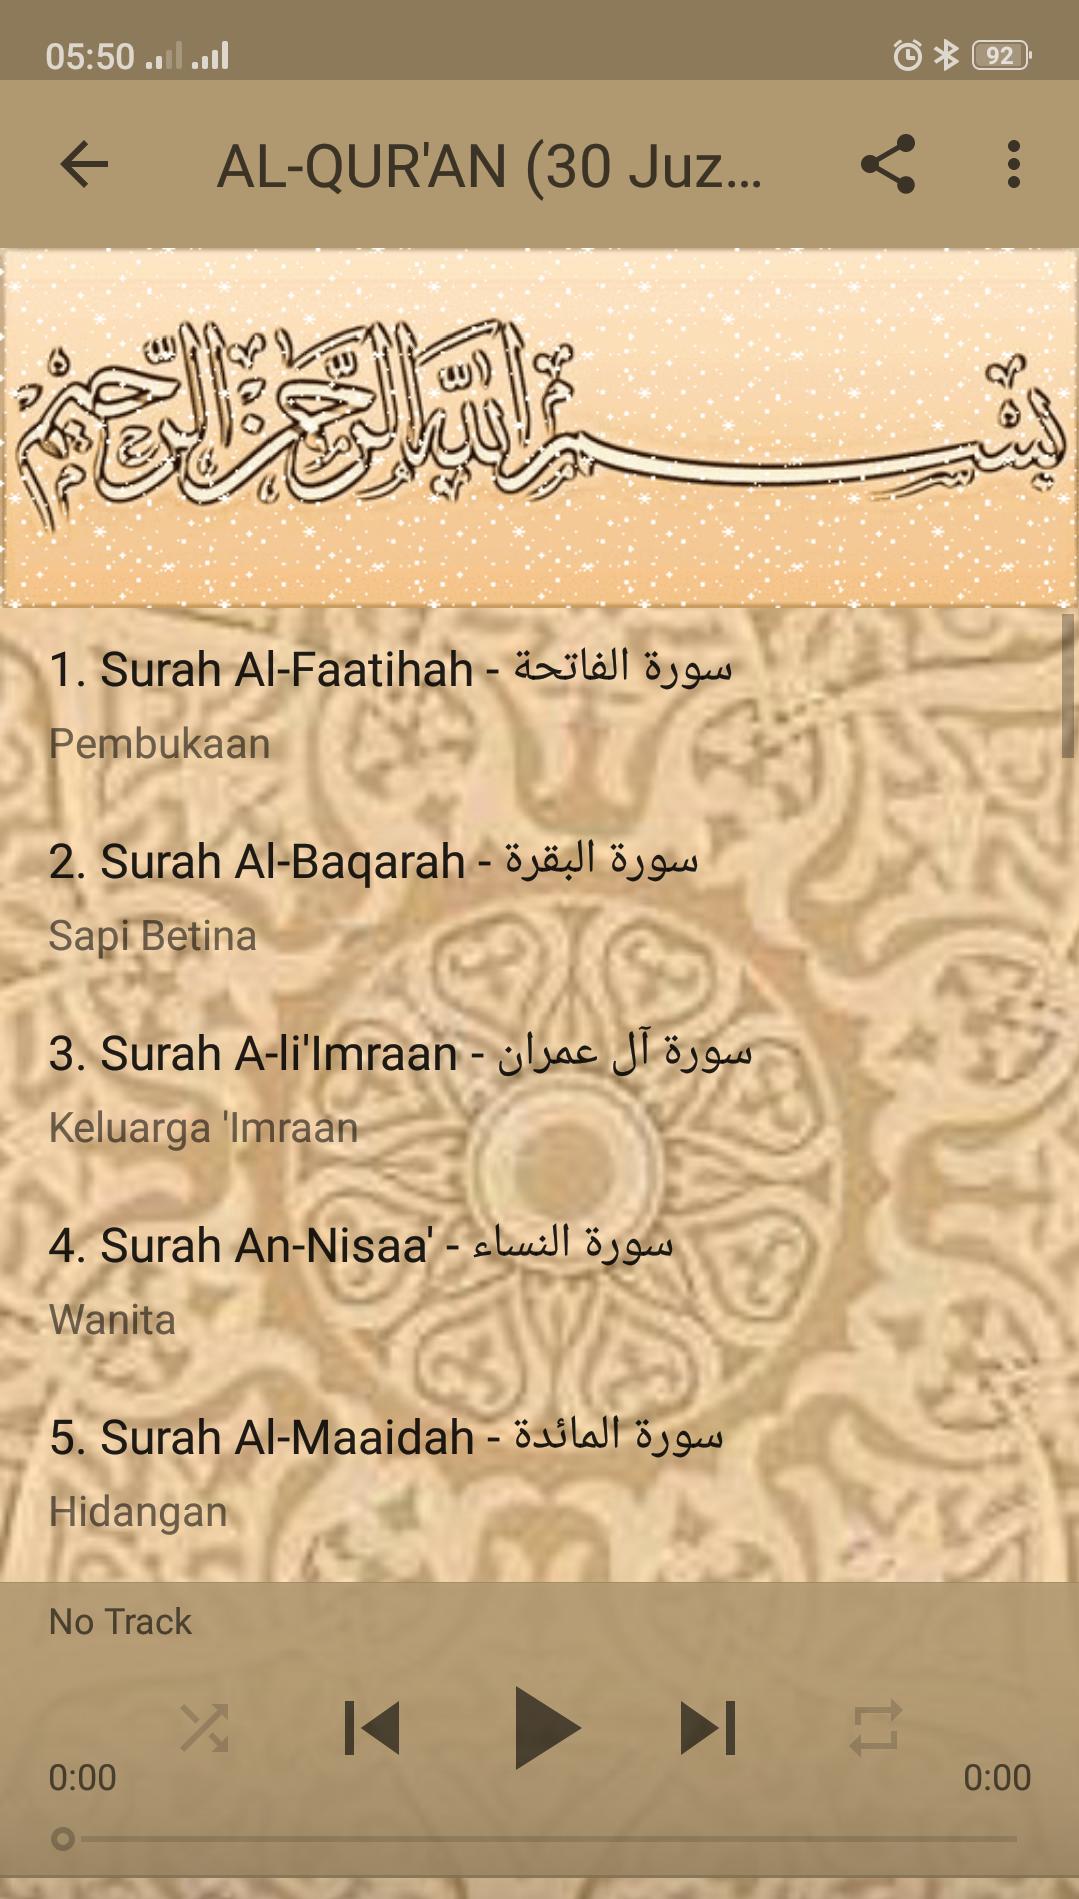 Al-quran full 30 mp3 download juz Download AlQuran